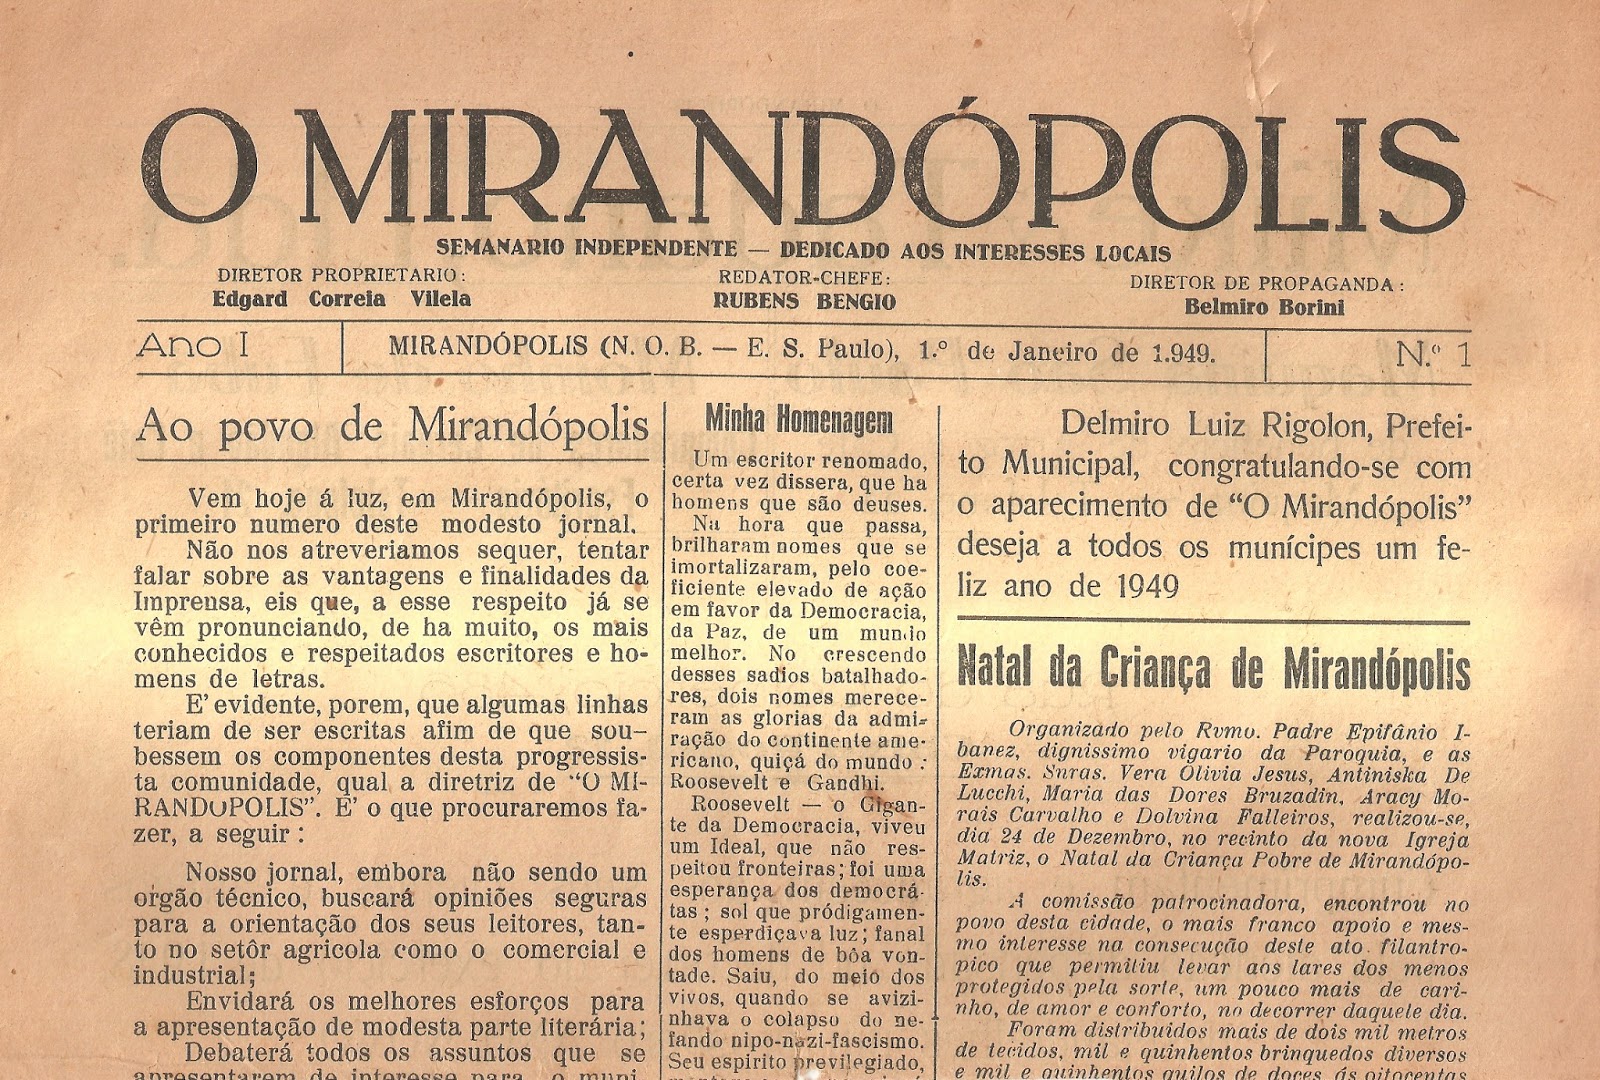 A minha ligação com Mirandópolis é muito forte, vem do meu avô